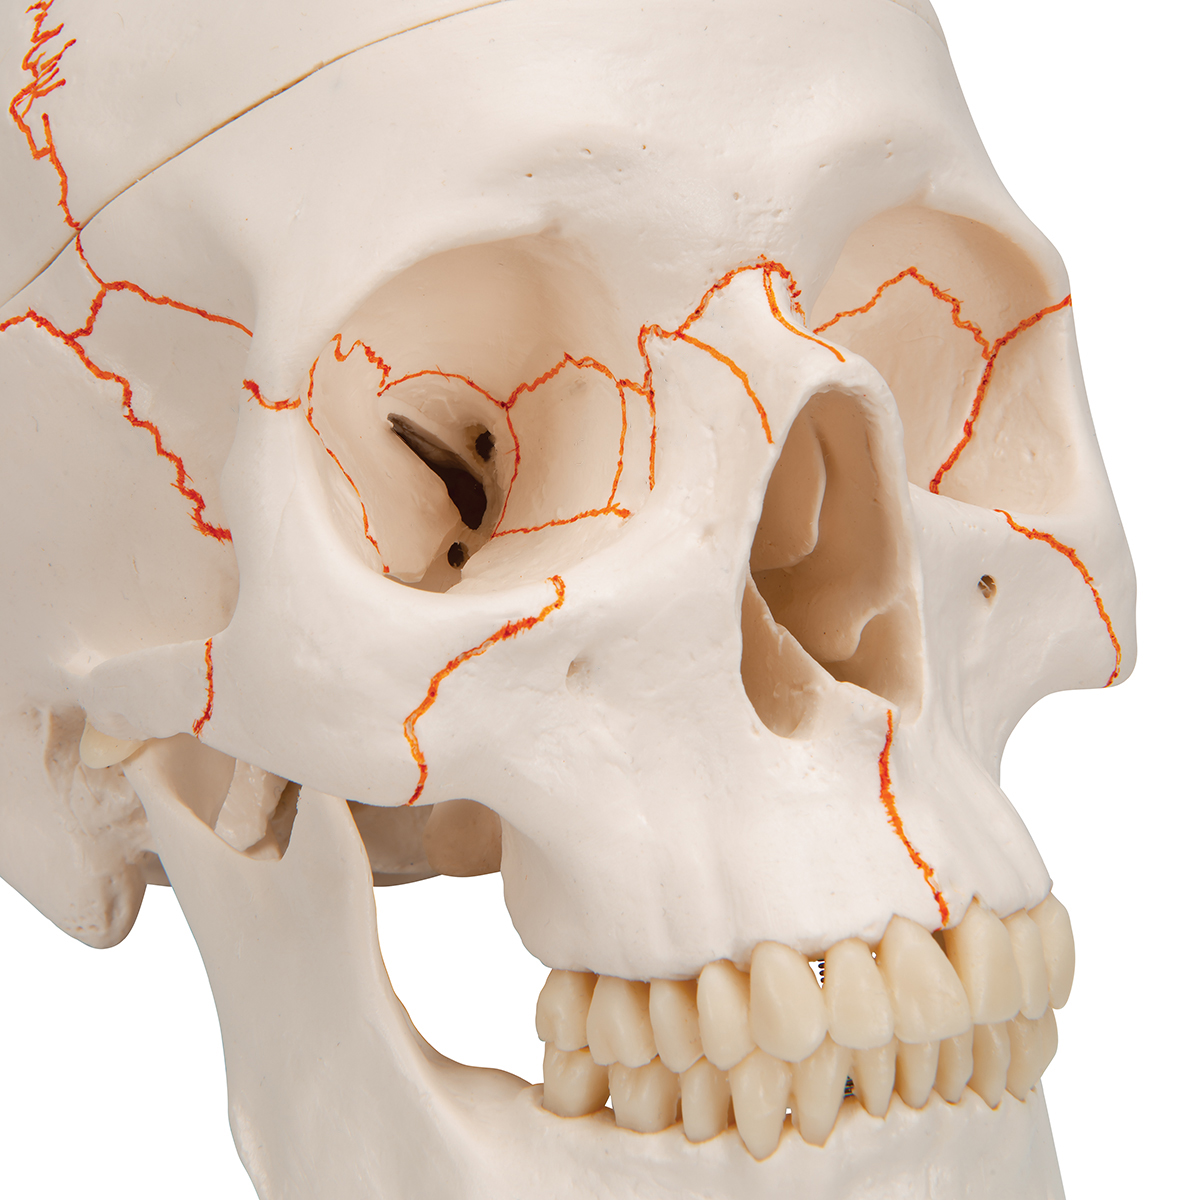 crâne humain - moulage de crâne humain - modèle anatomique - 3B Scientific